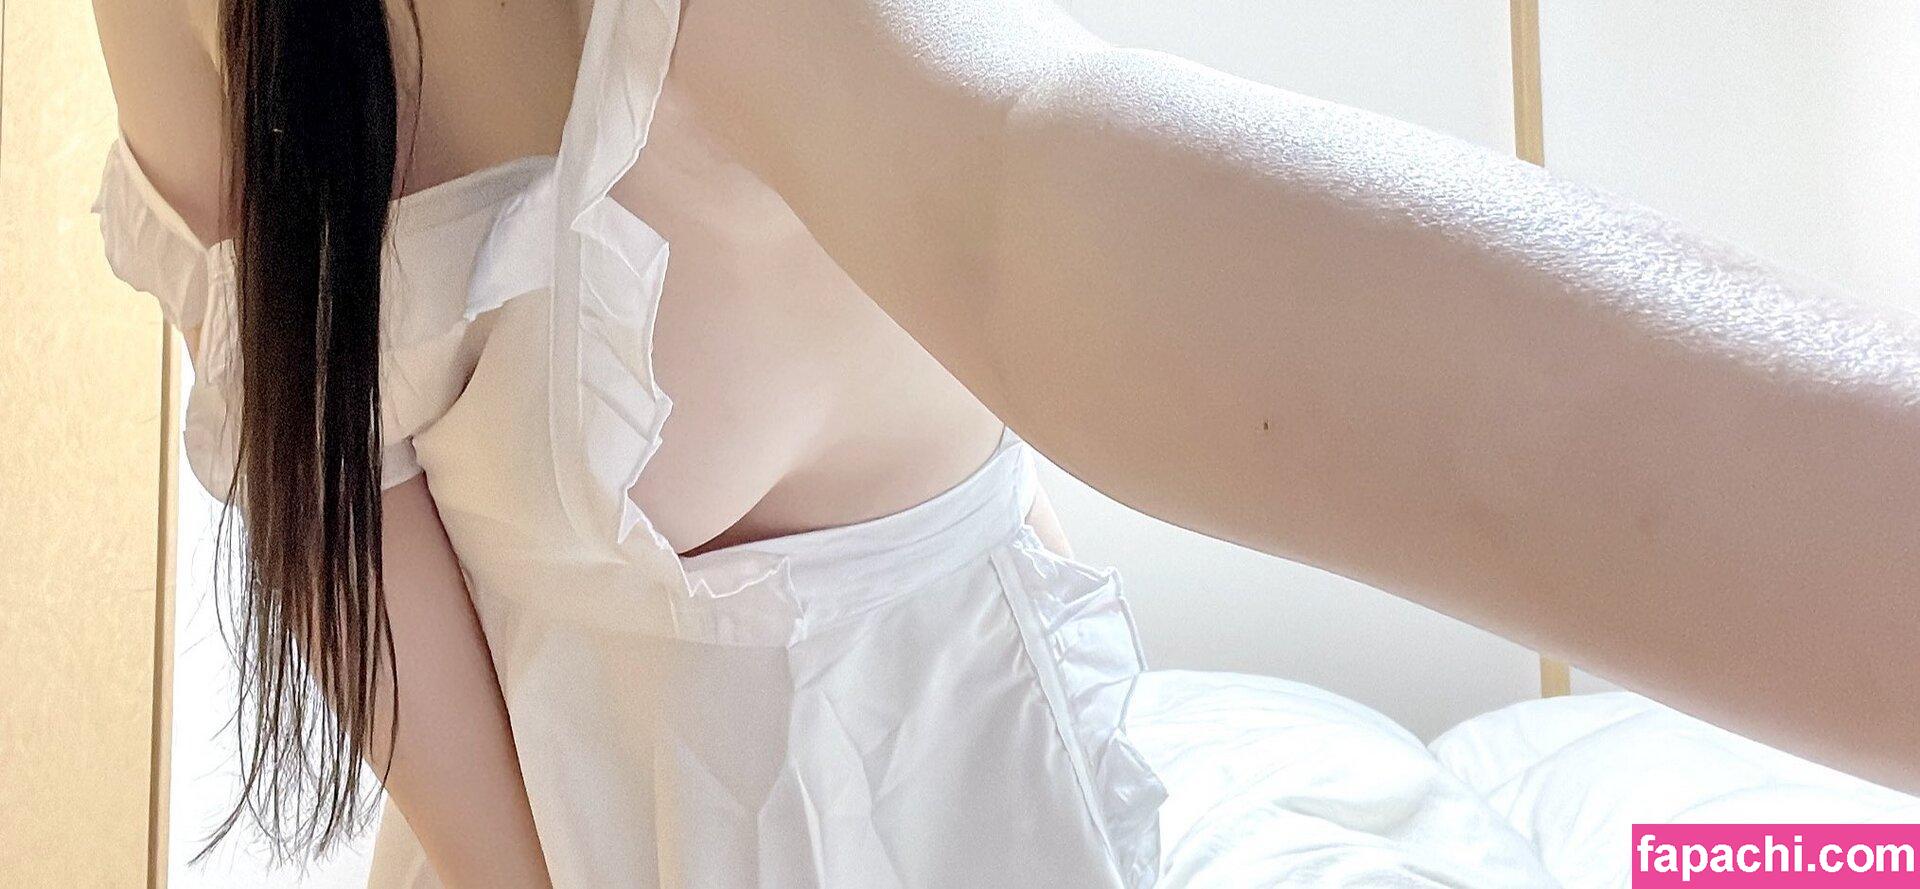 Chikakuno Izumi / chikakunoizumi / watergirloooo / 近野いずみ leaked nude photo #0001 from OnlyFans/Patreon